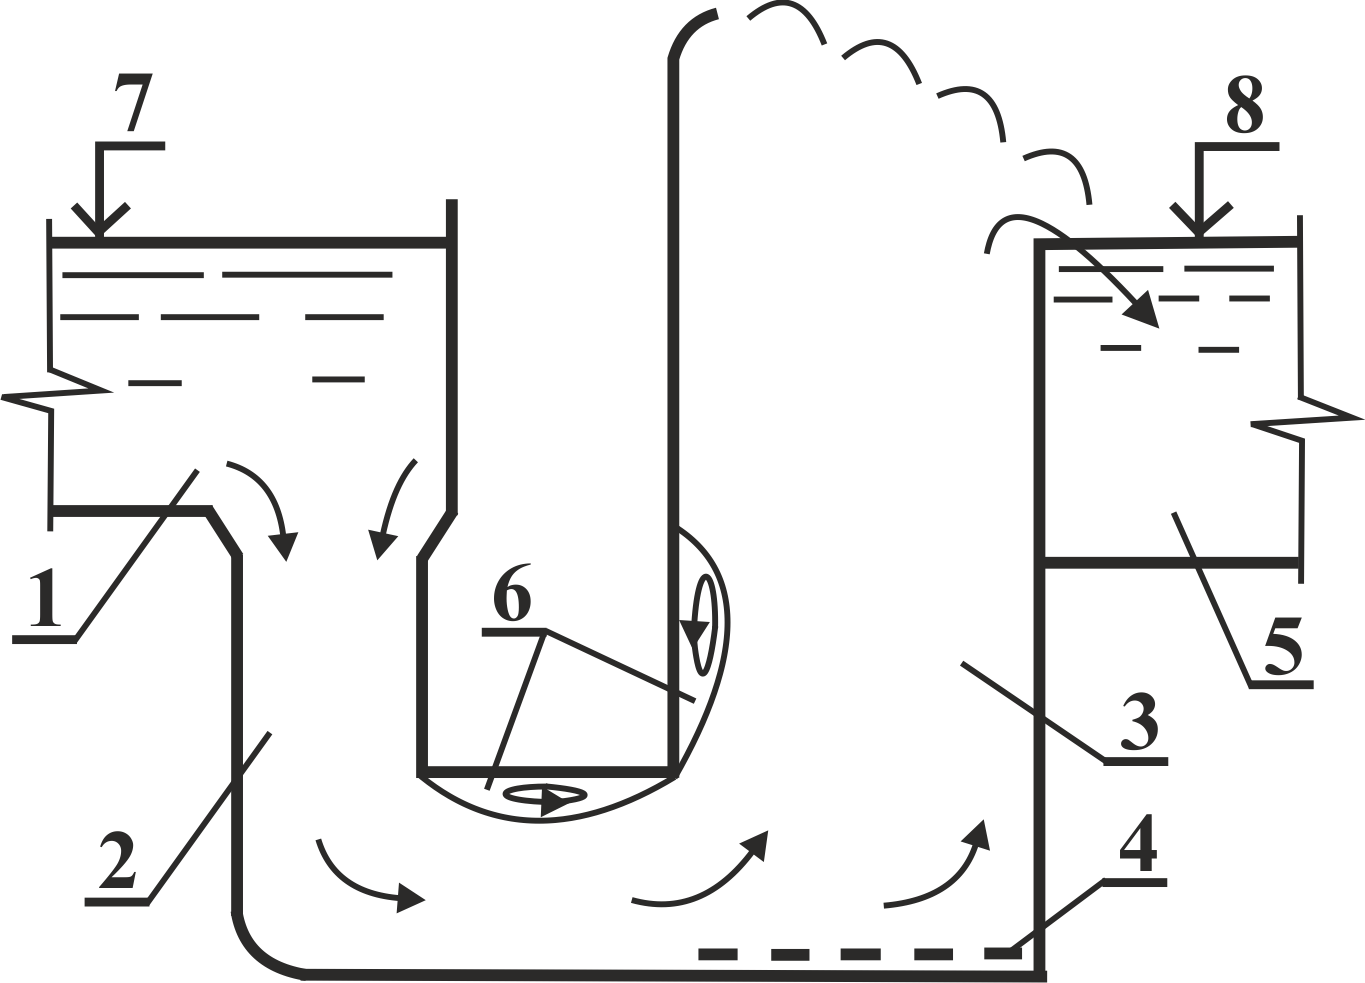 Вариант сопряжения эрлифтного подъемника с помощью вертикальной шахты: 1 - лоток приема; 2 - вертикальная шахта; 3 - подъёмная шахт; 4 - форсунка; 5 - отводящий тракт; 6 - области завихрений; 7, 8 - верхний и нижний бьефы соответственно